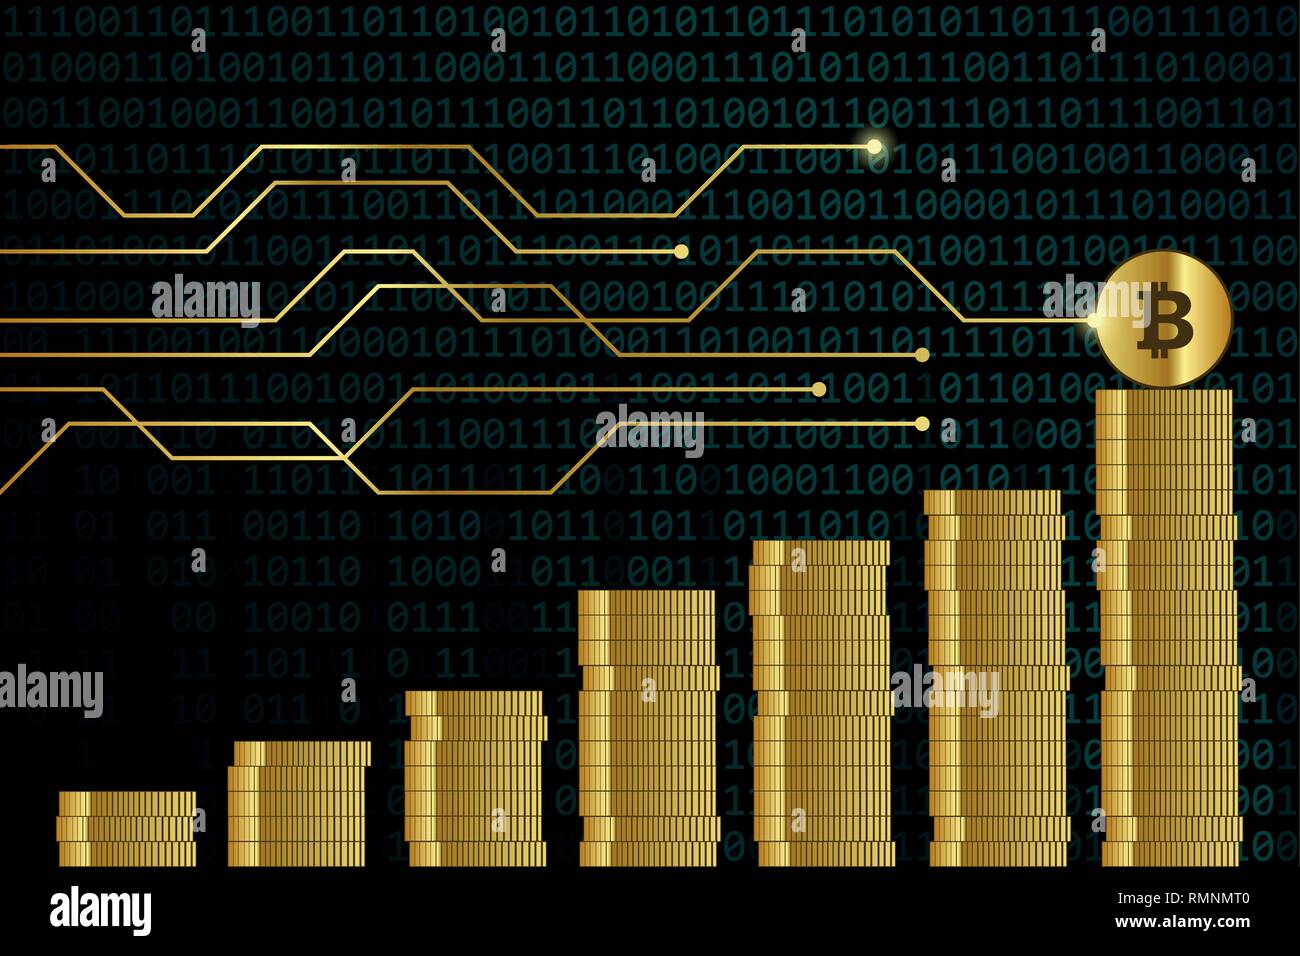 Steigende bitcoin Kurs viele Goldene digitale Münzen mit binären Code Hintergrund Finanzen konzept Vektor-illustration EPS 10. Stock Vektor